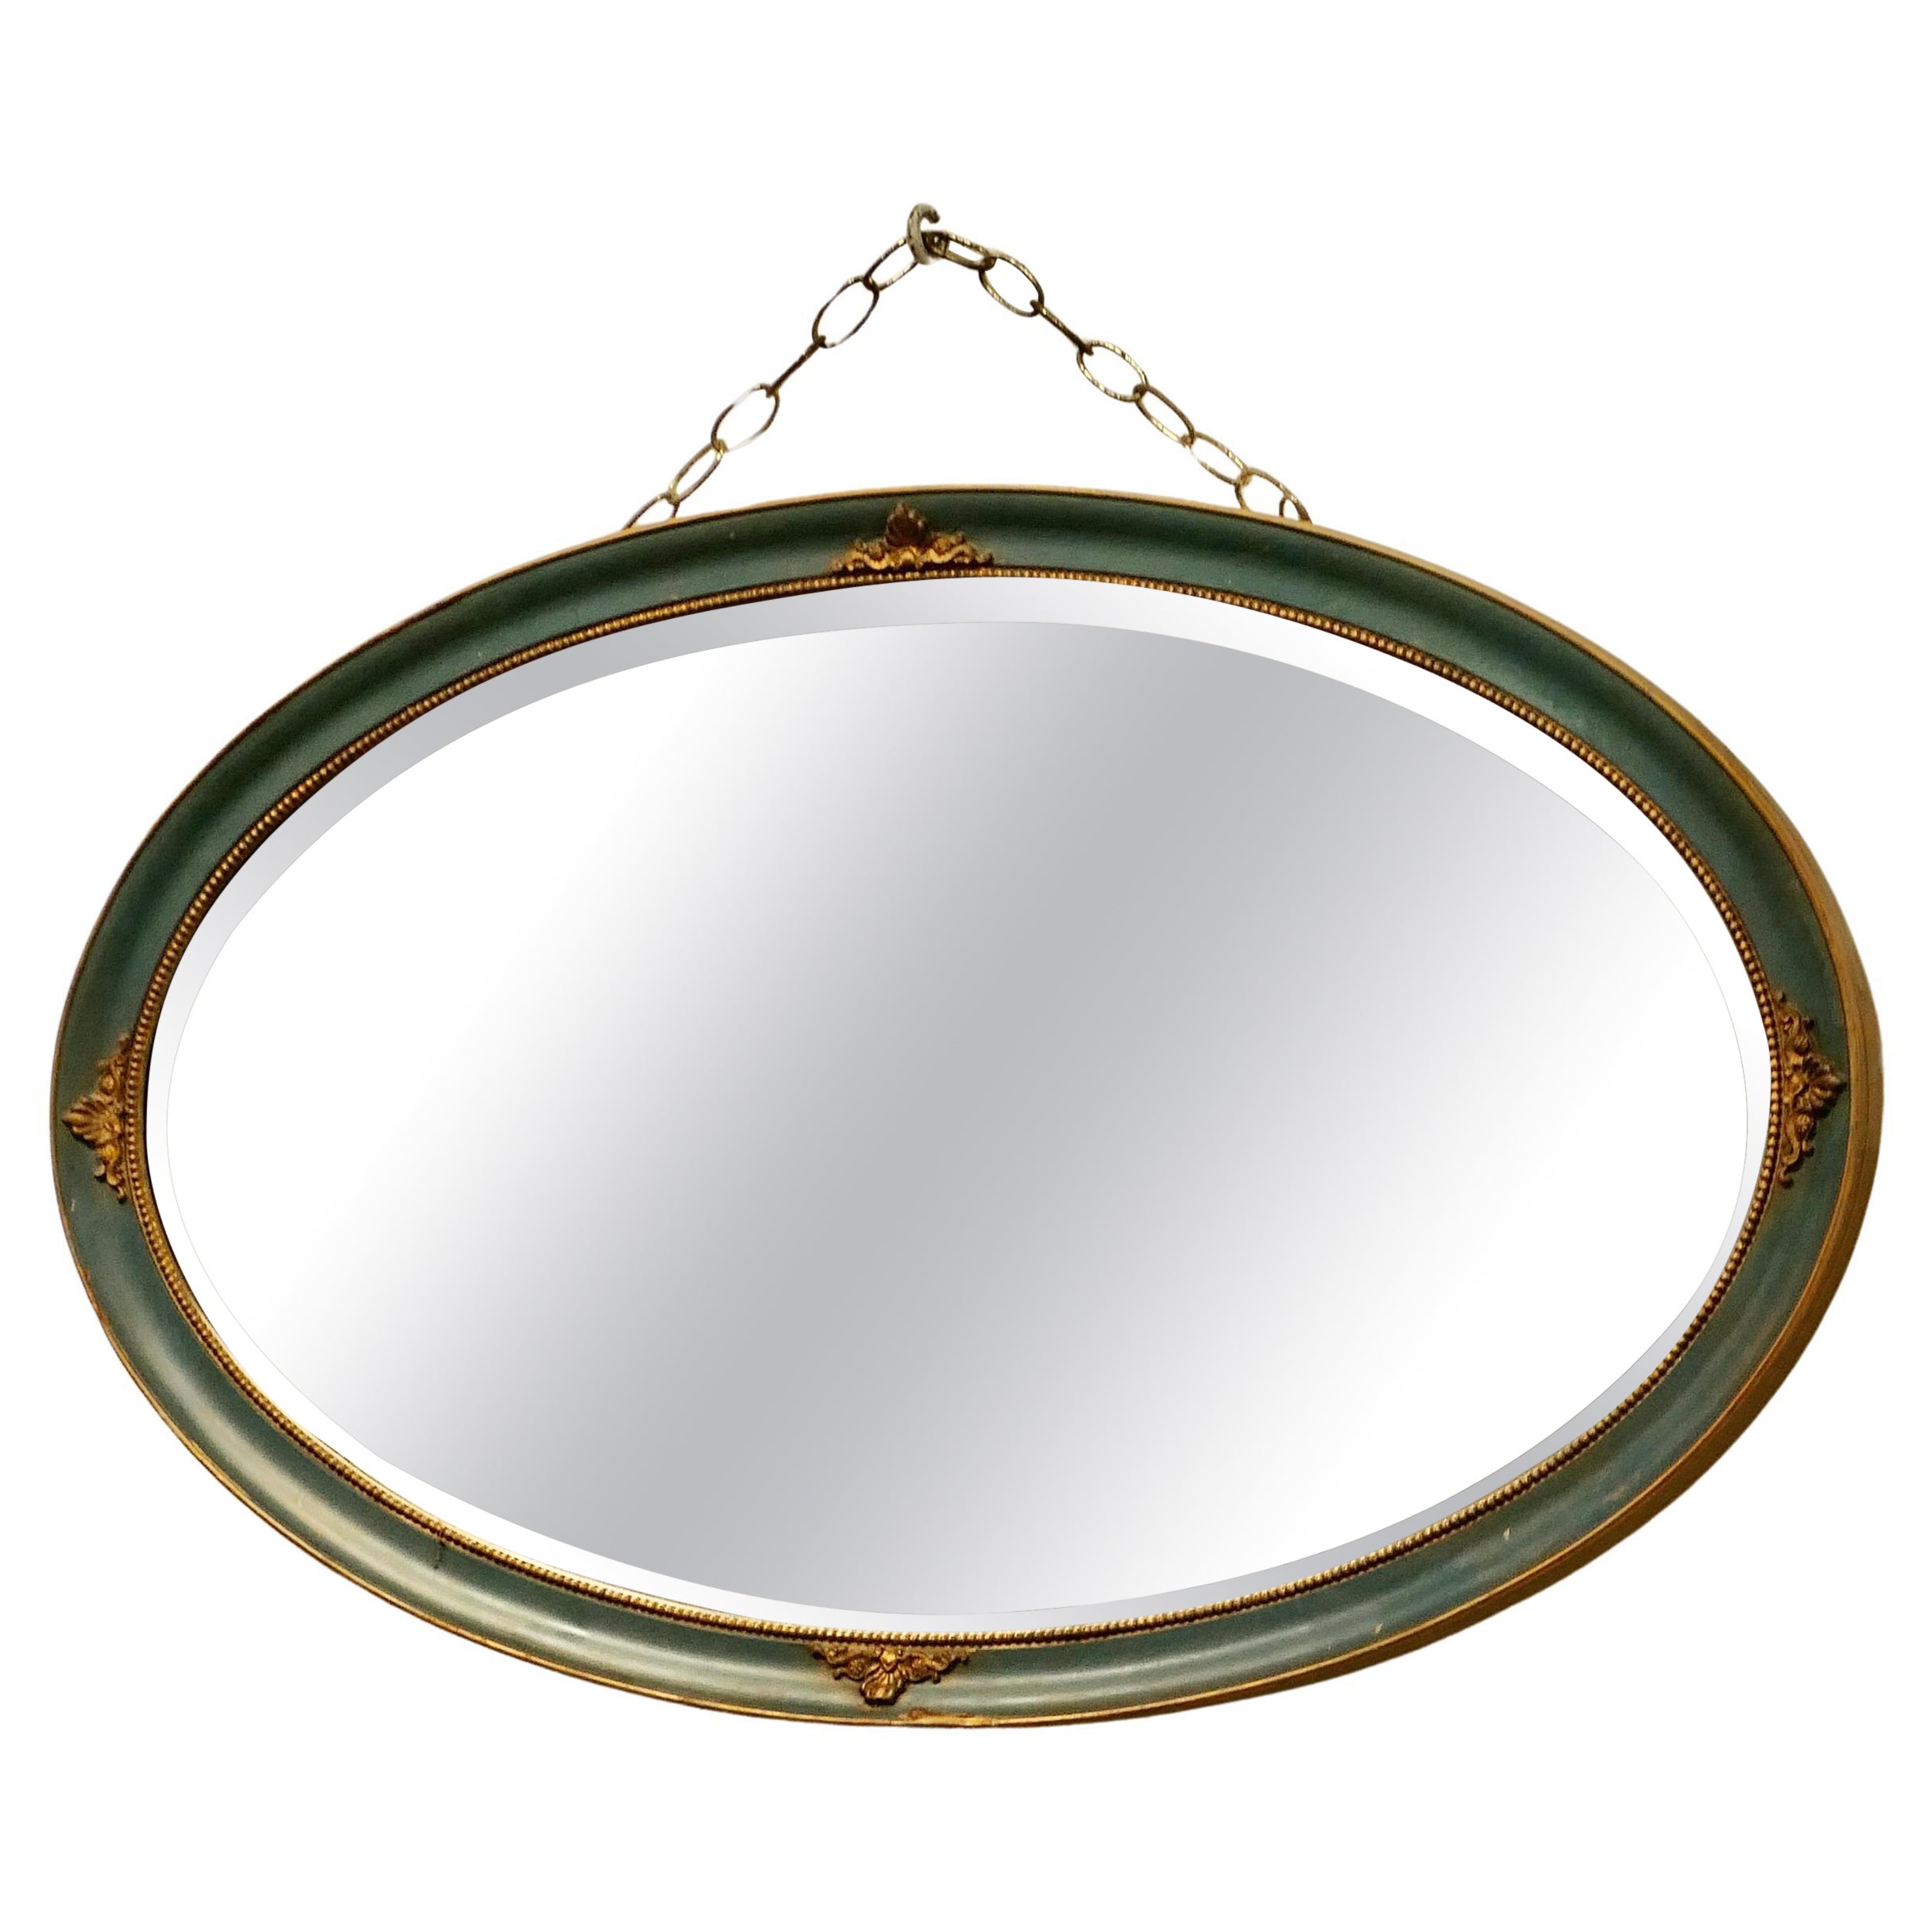 Ovaler vergoldeter und bemalter Wandspiegel  Dieser Spiegel hat einen geformten ovalen Rahmen  